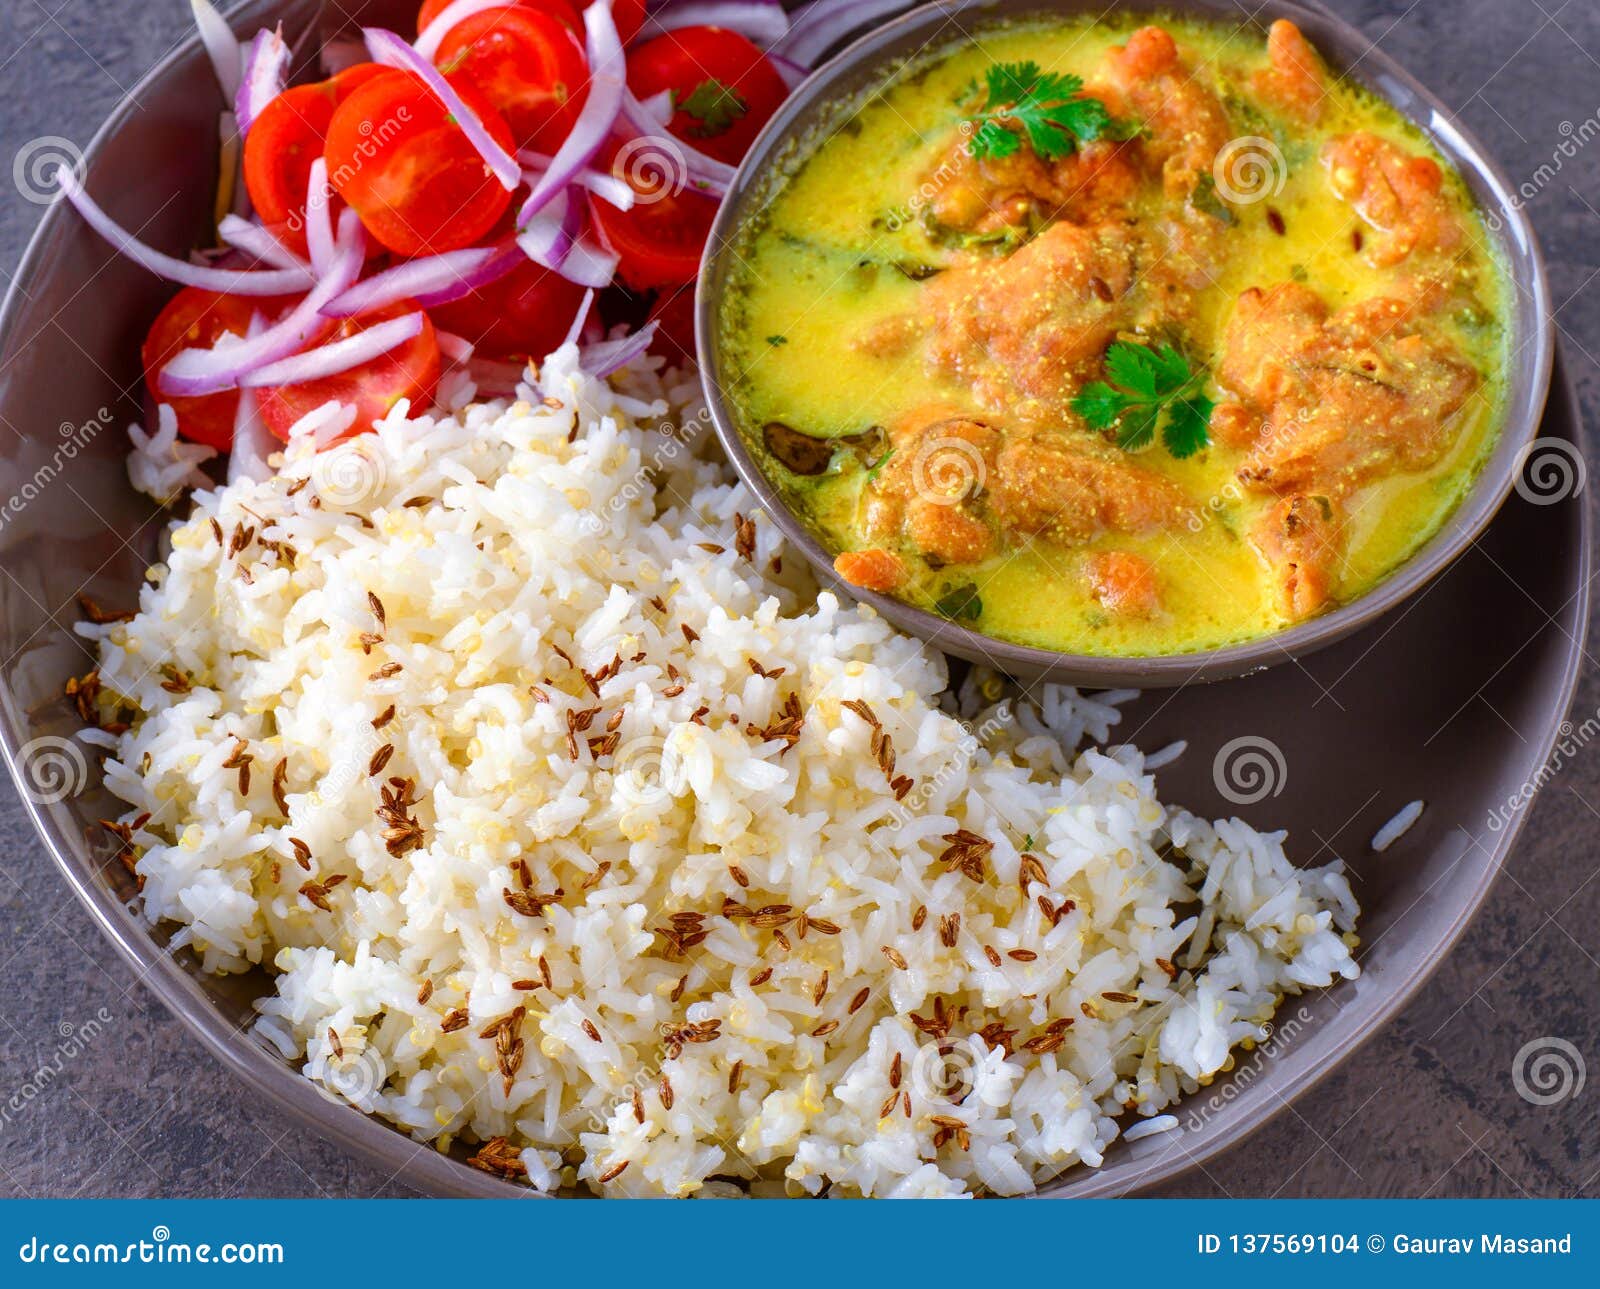 indian vegetarian meal - punjabi kadi and rice